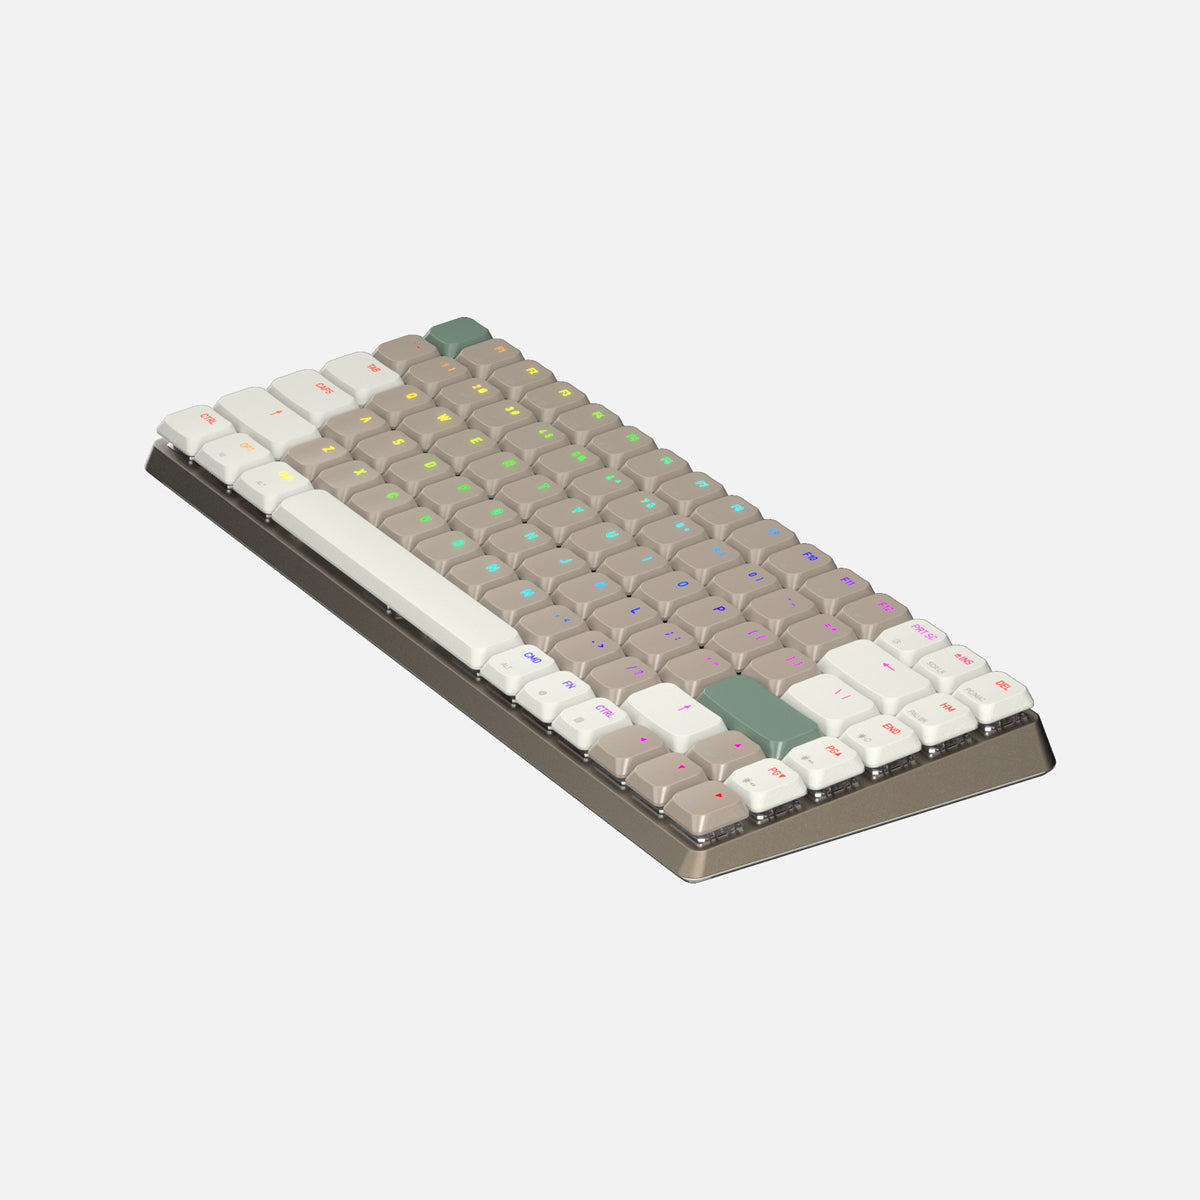 Cascade slankt 75 % trådløst hot-swap-tastatur